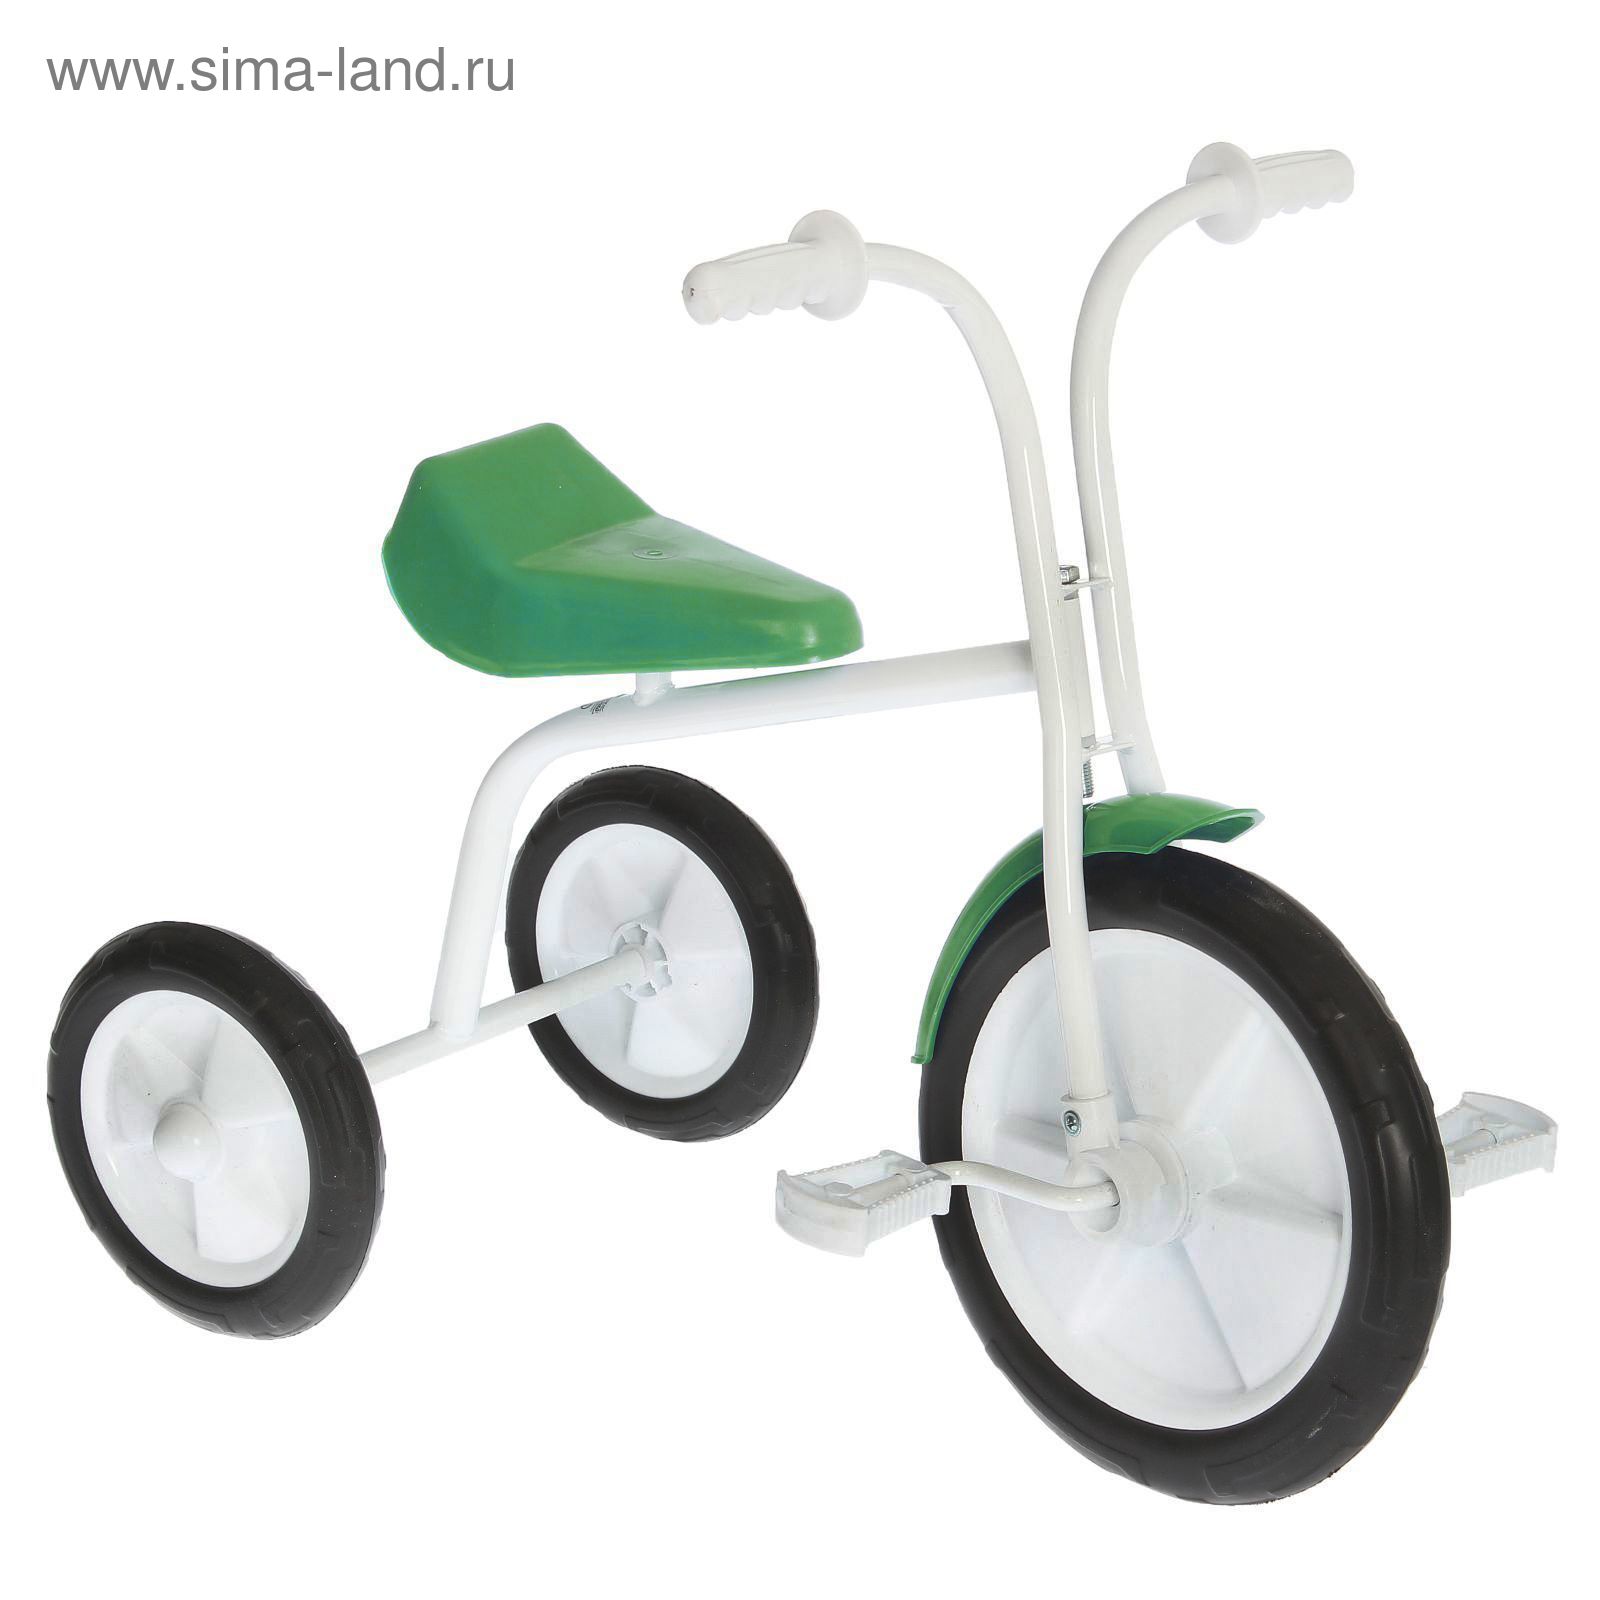 Велосипед трехколесный  "Малыш"  01ПН, цвет зеленый, фасовка: 1шт.